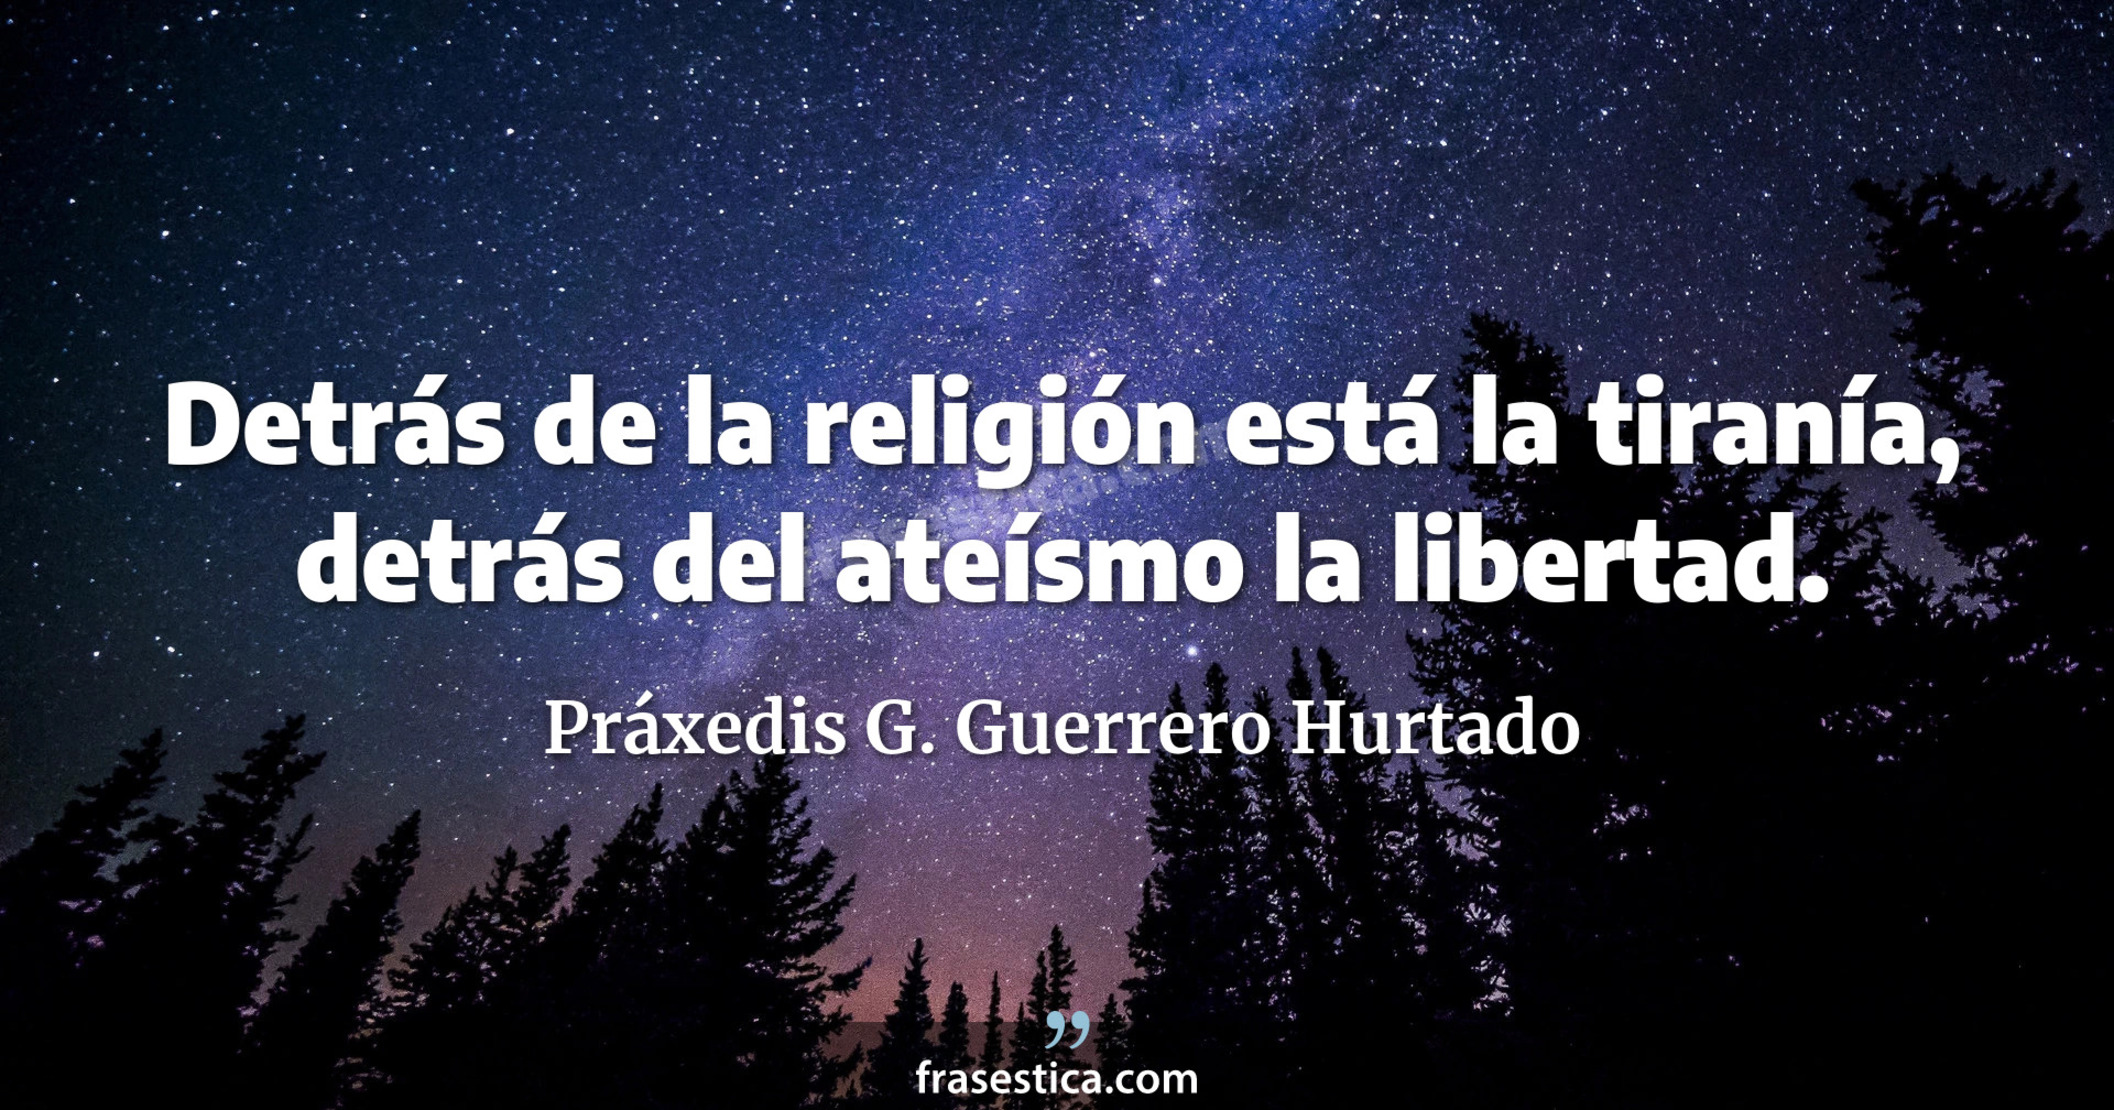 Detrás de la religión está la tiranía, detrás del ateísmo la libertad. - Práxedis G. Guerrero Hurtado